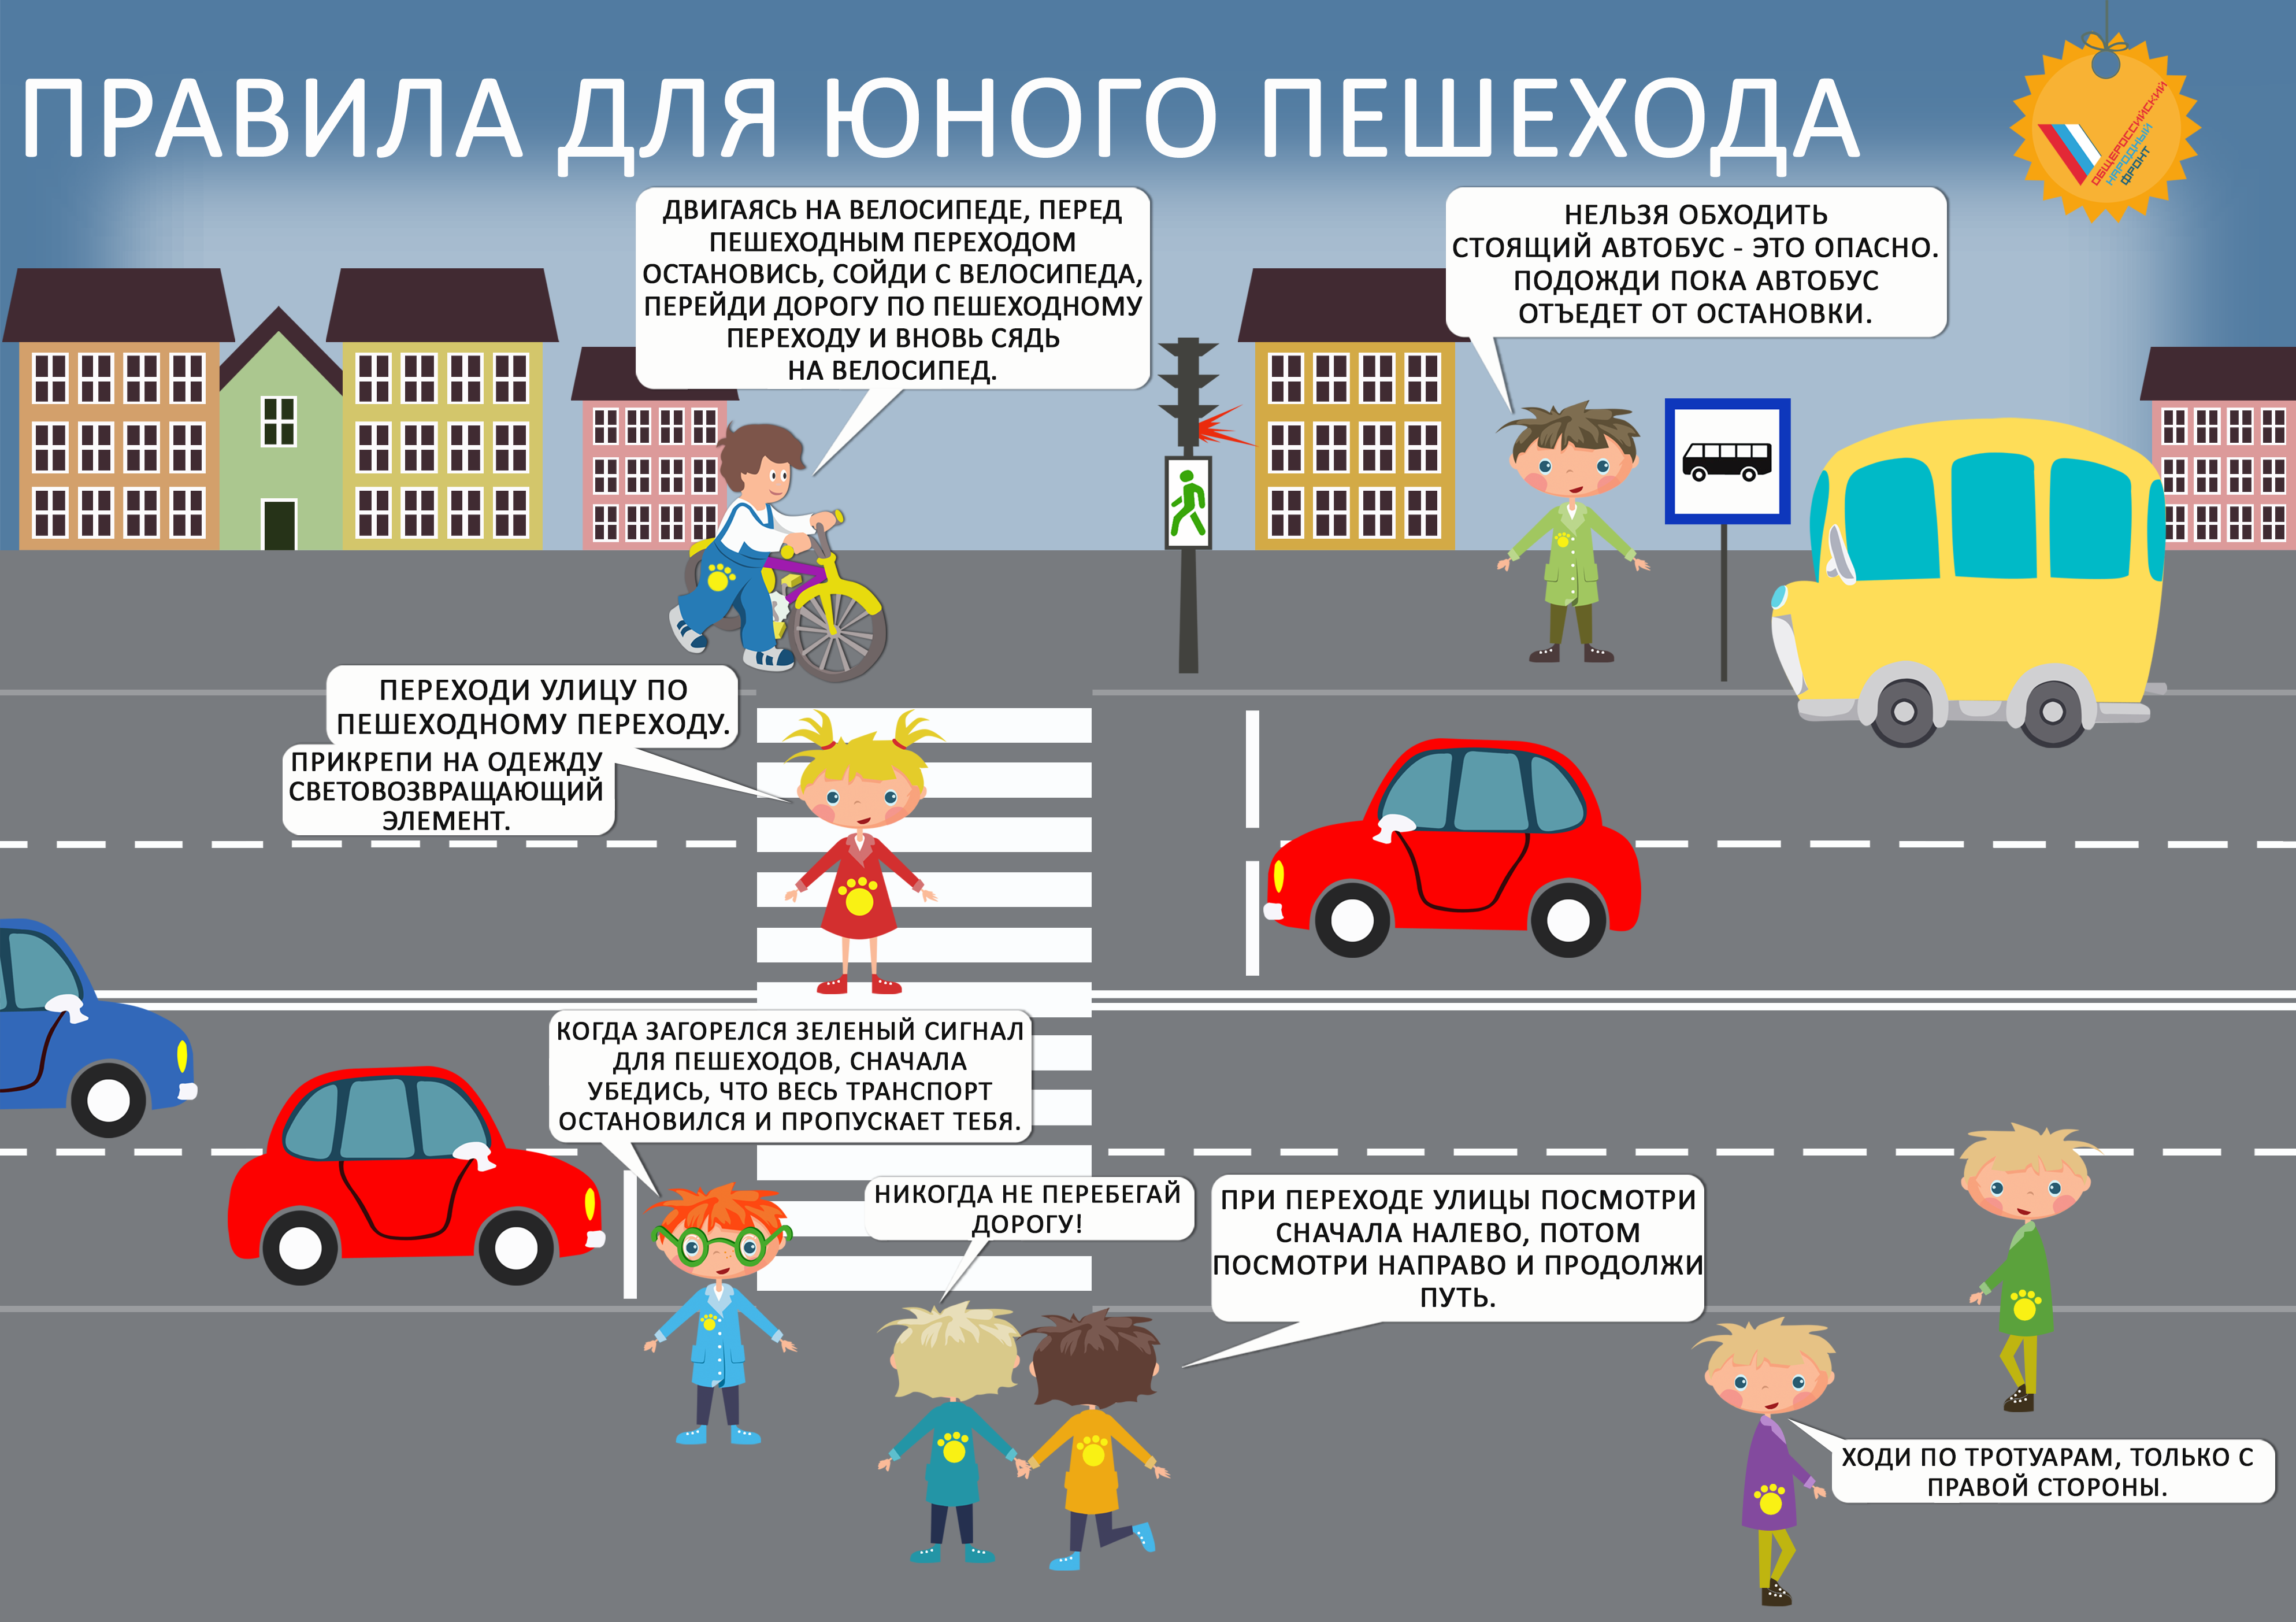 Правила дорожного движения для детей. Правила дорожного движения для пешеходов. Правила дорожного движения для пешеходов для детей. Правило дорожного движения для детей.